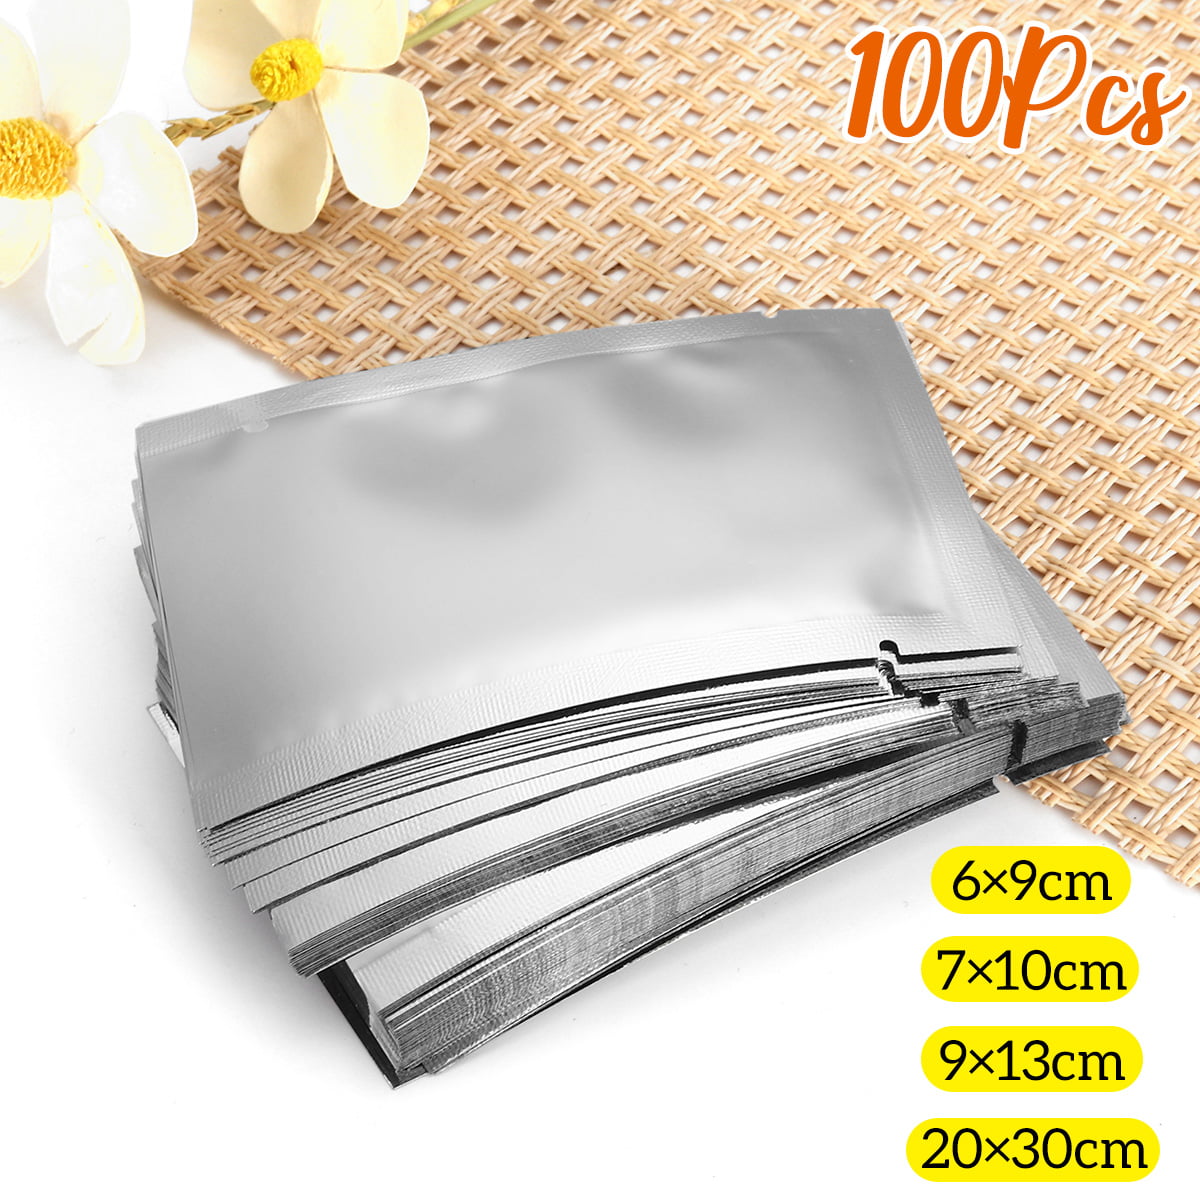 100pcs Silver Aluminum Foil Bags Heat Seal Mylar Food Storage Vacuum Pouches 